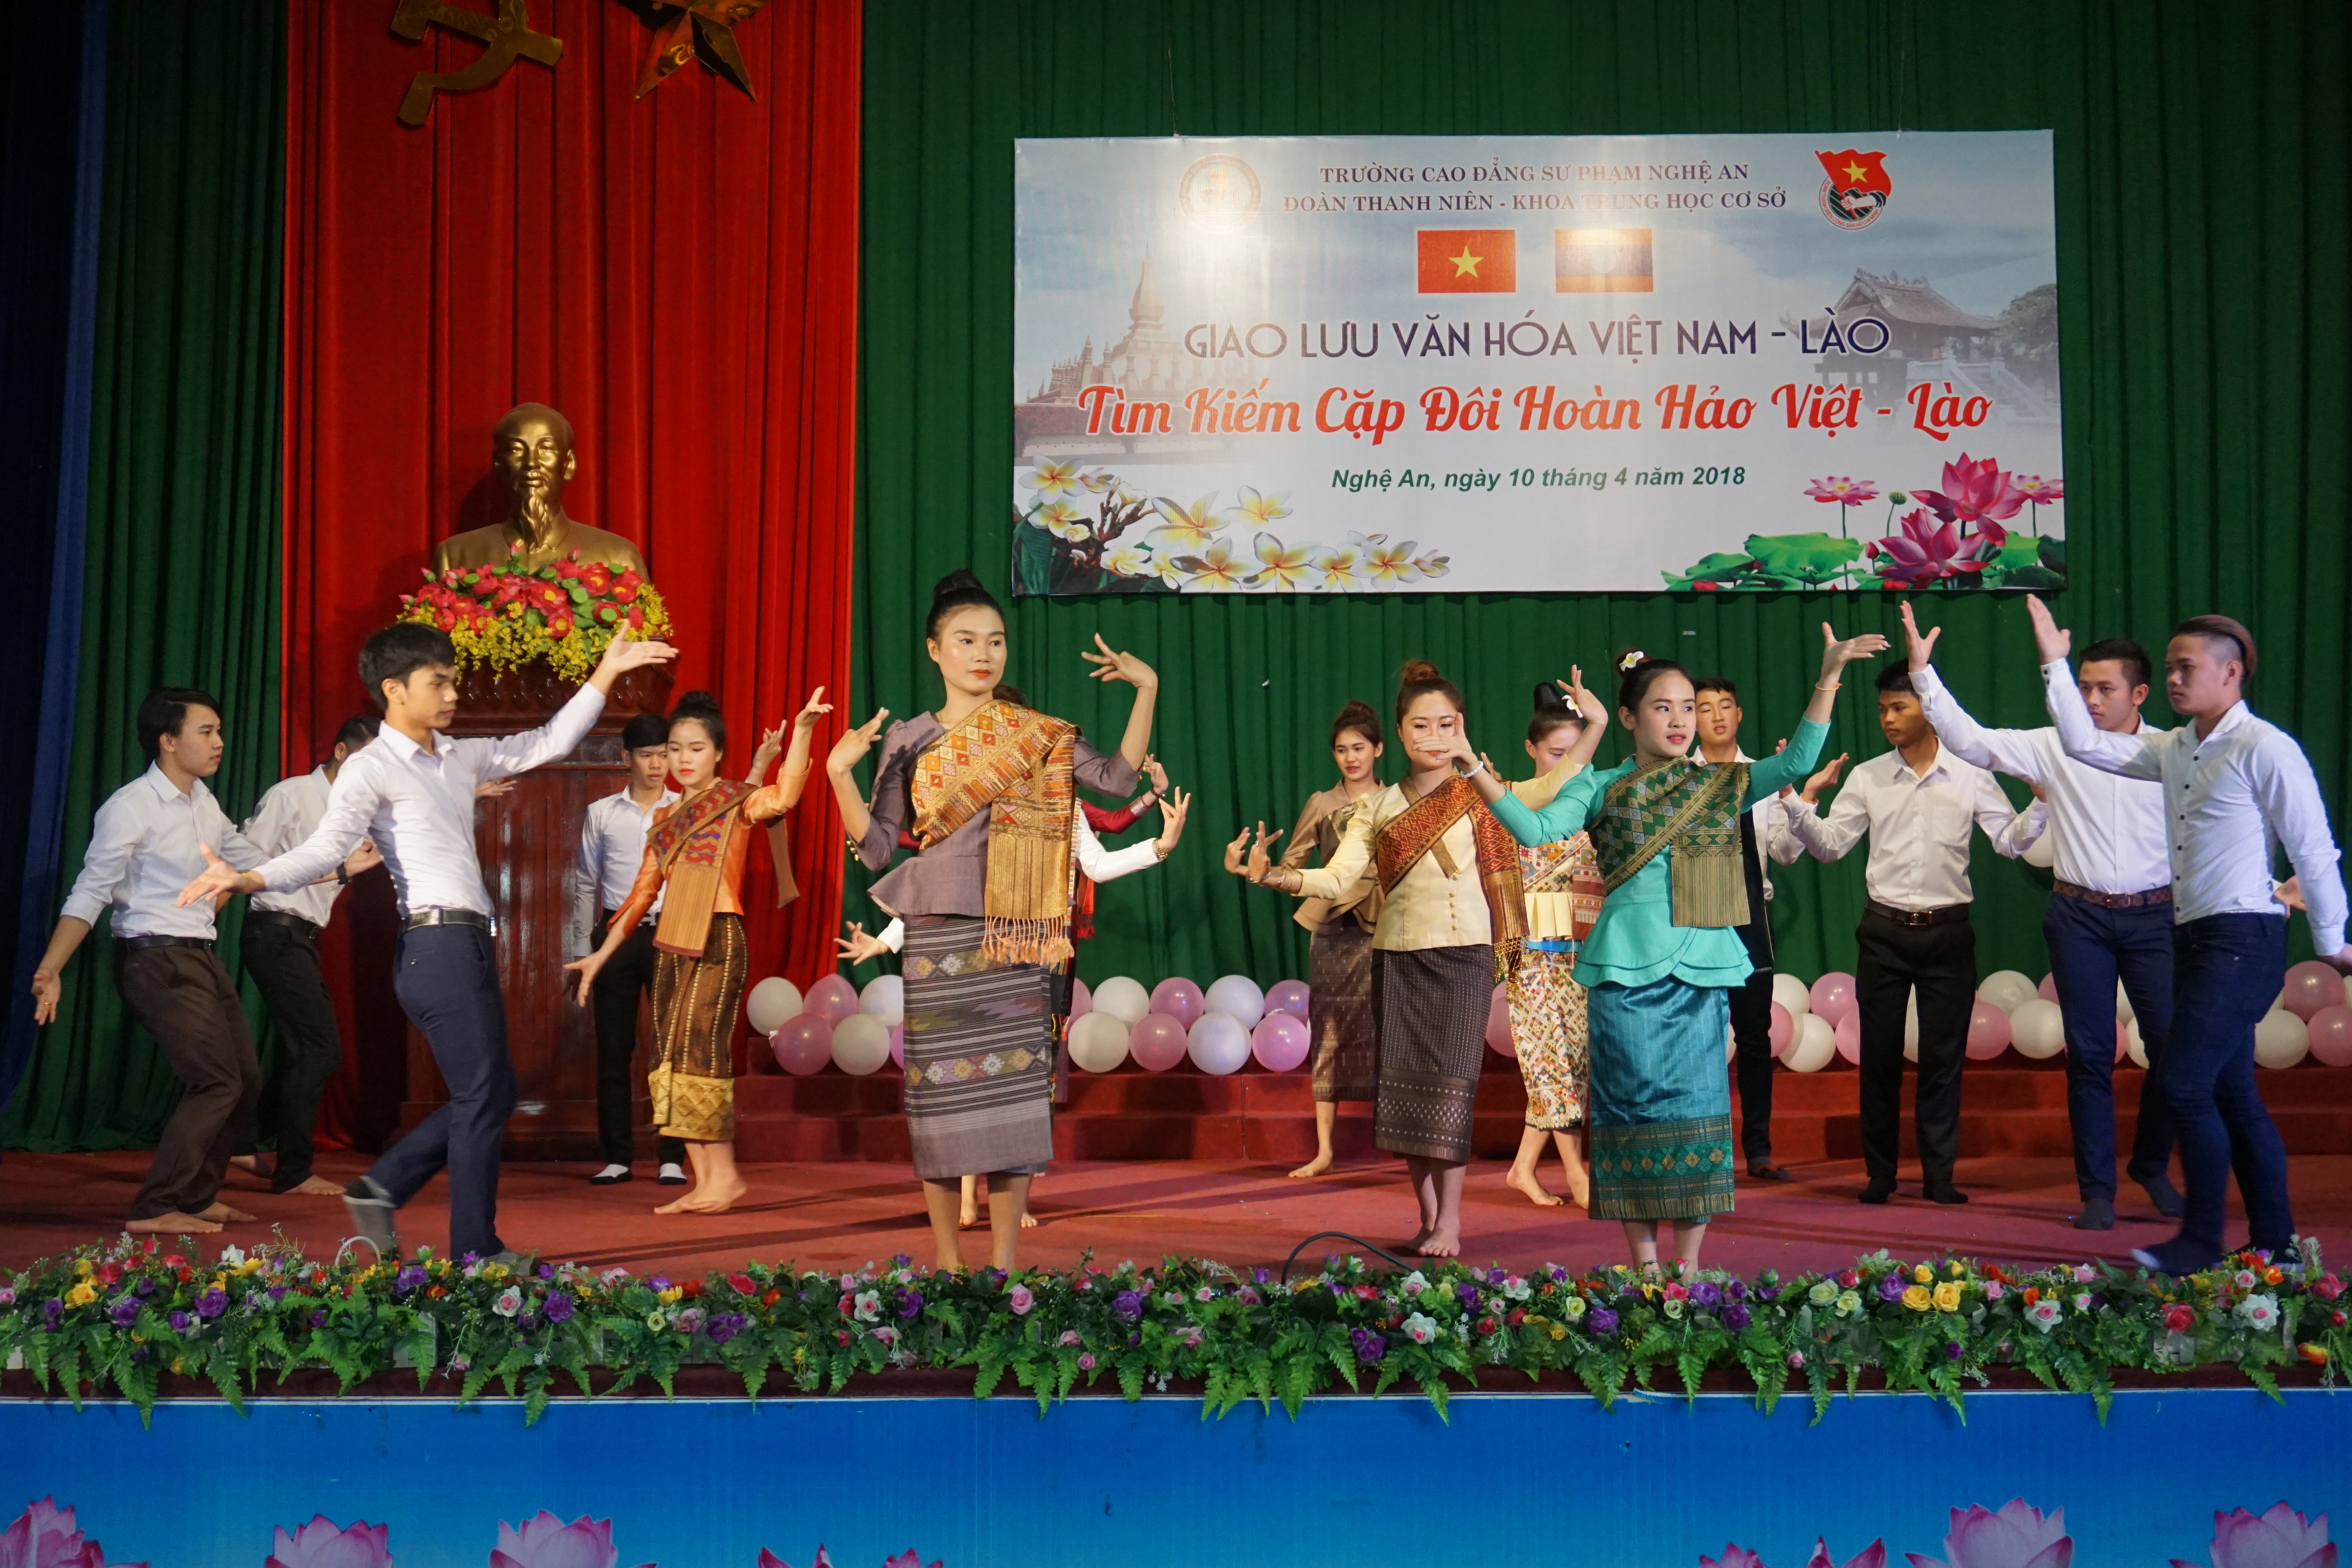  Những điệu múa mang đậm bẳn sắc văn hóa Lào được sinh viên 2 nước cùng nhau thể hiện. Ảnh: Chu Quang Huy 